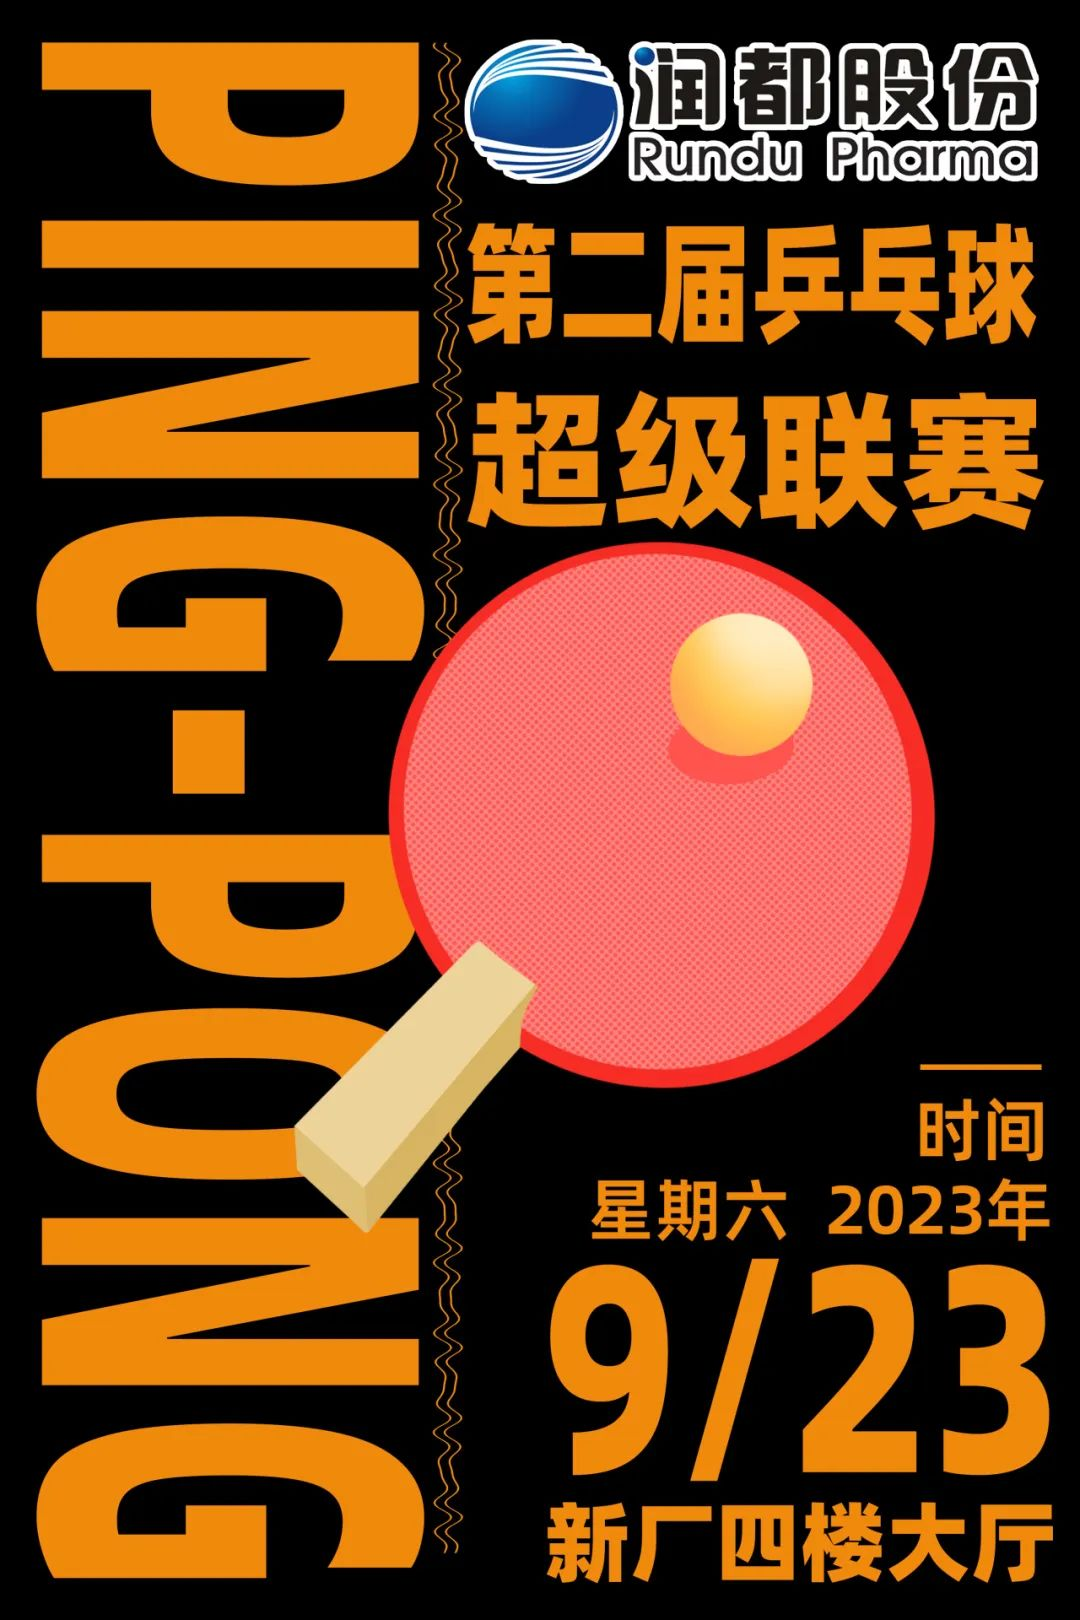 2023年第二届乒乓球超级联赛预告